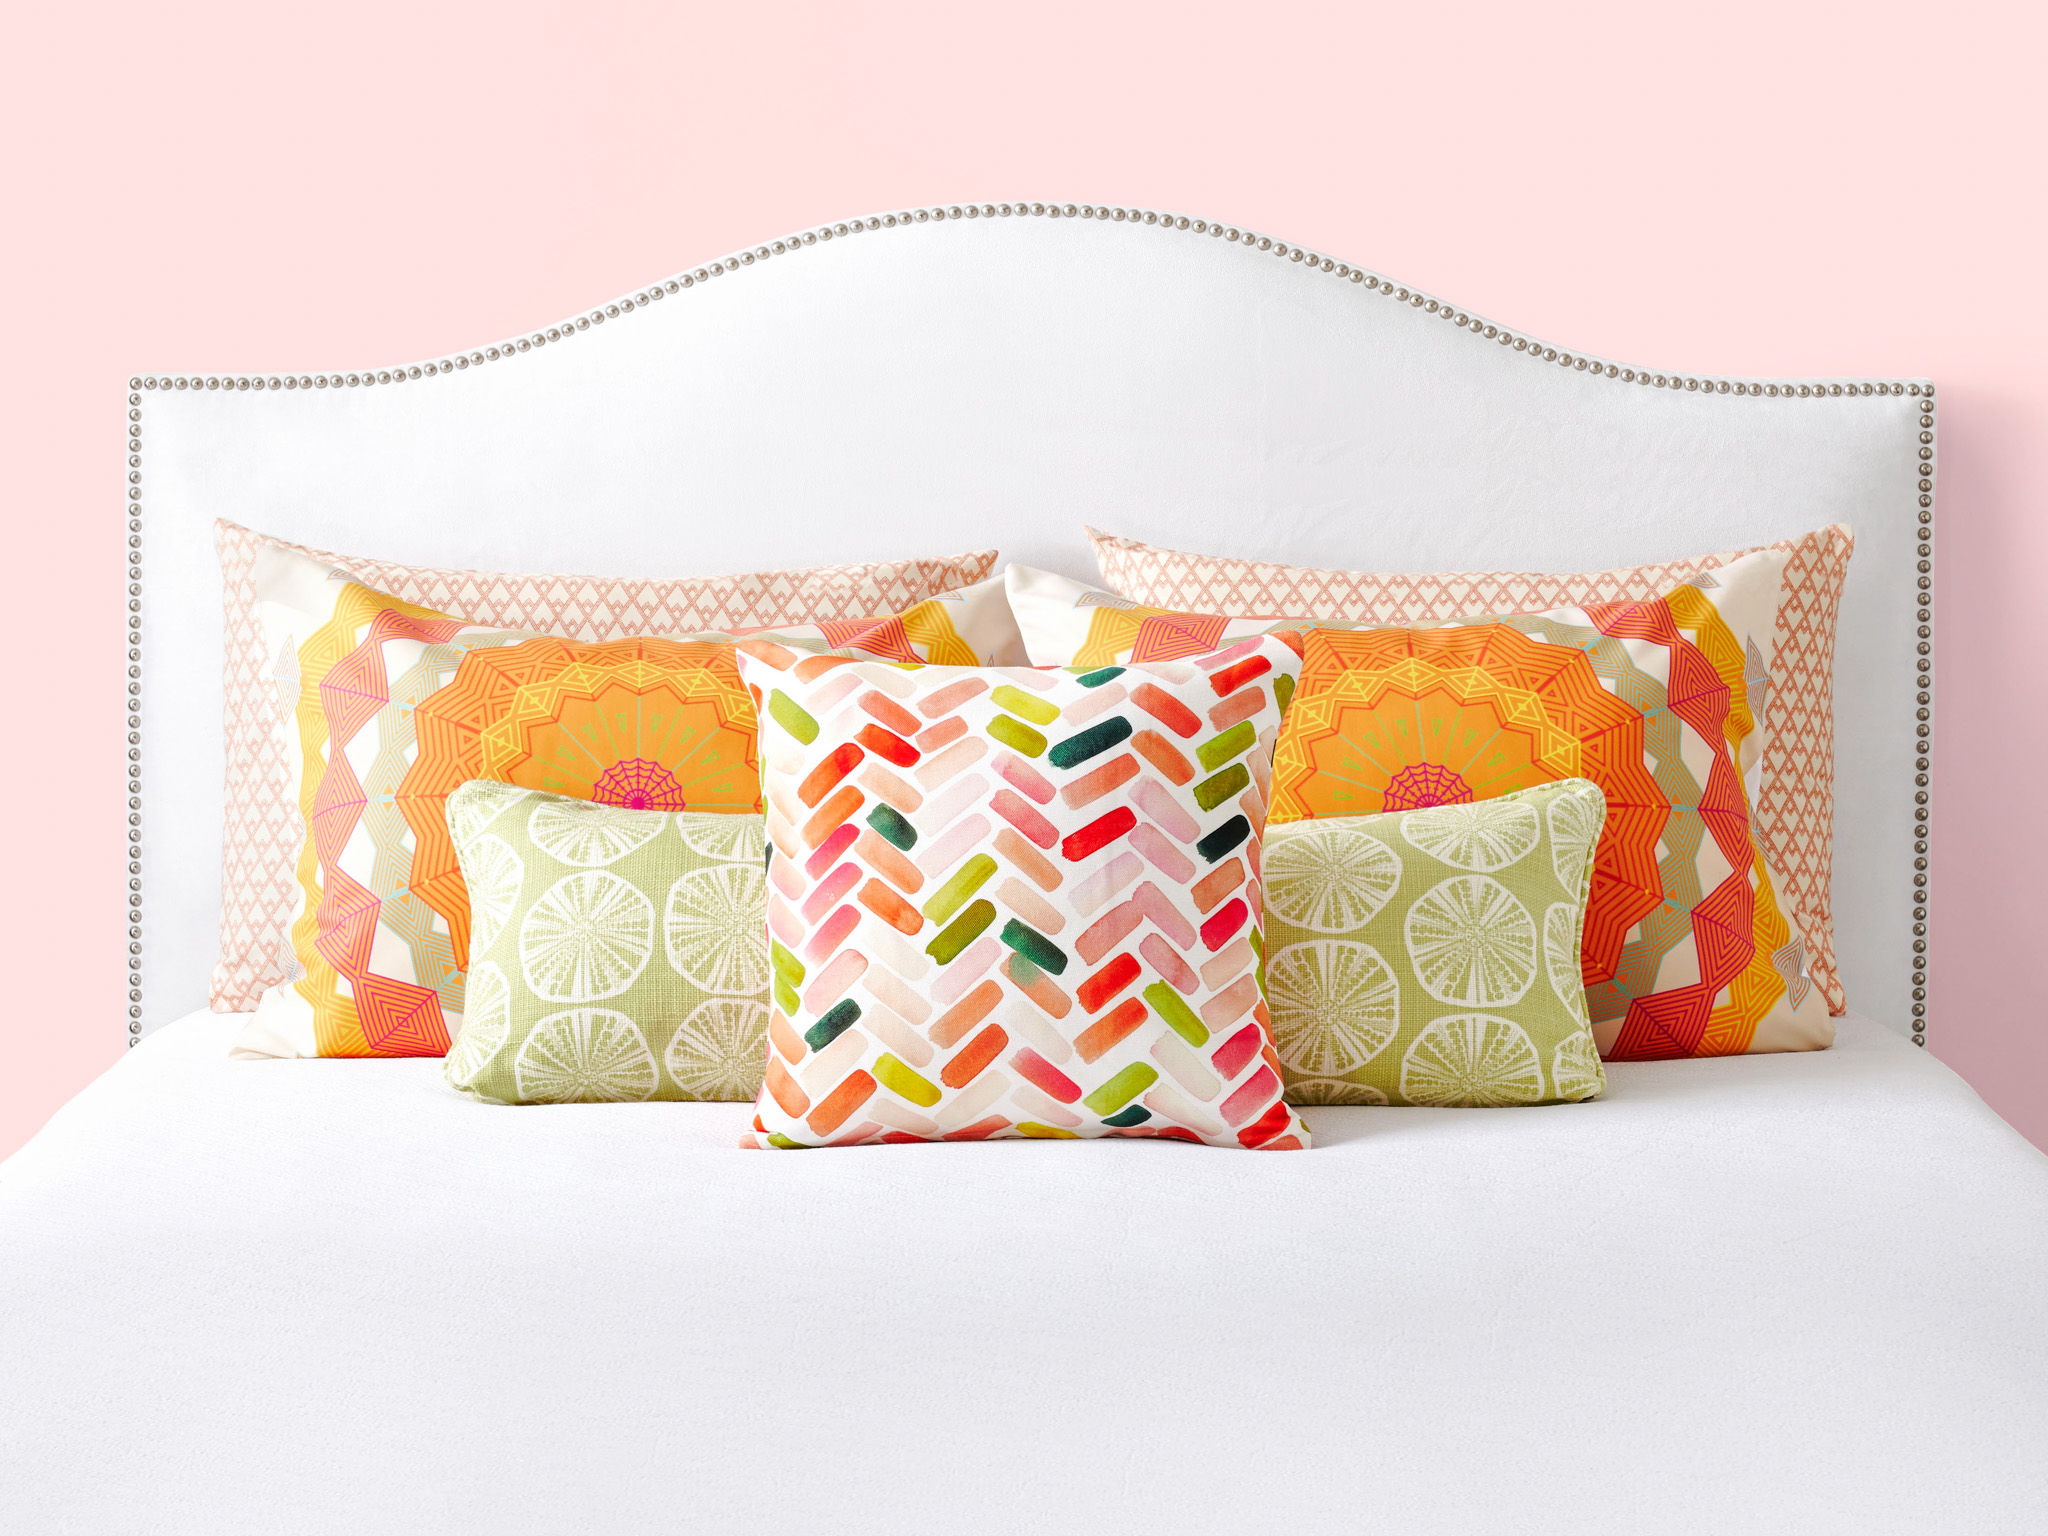 Разноцветные подушки на кровати